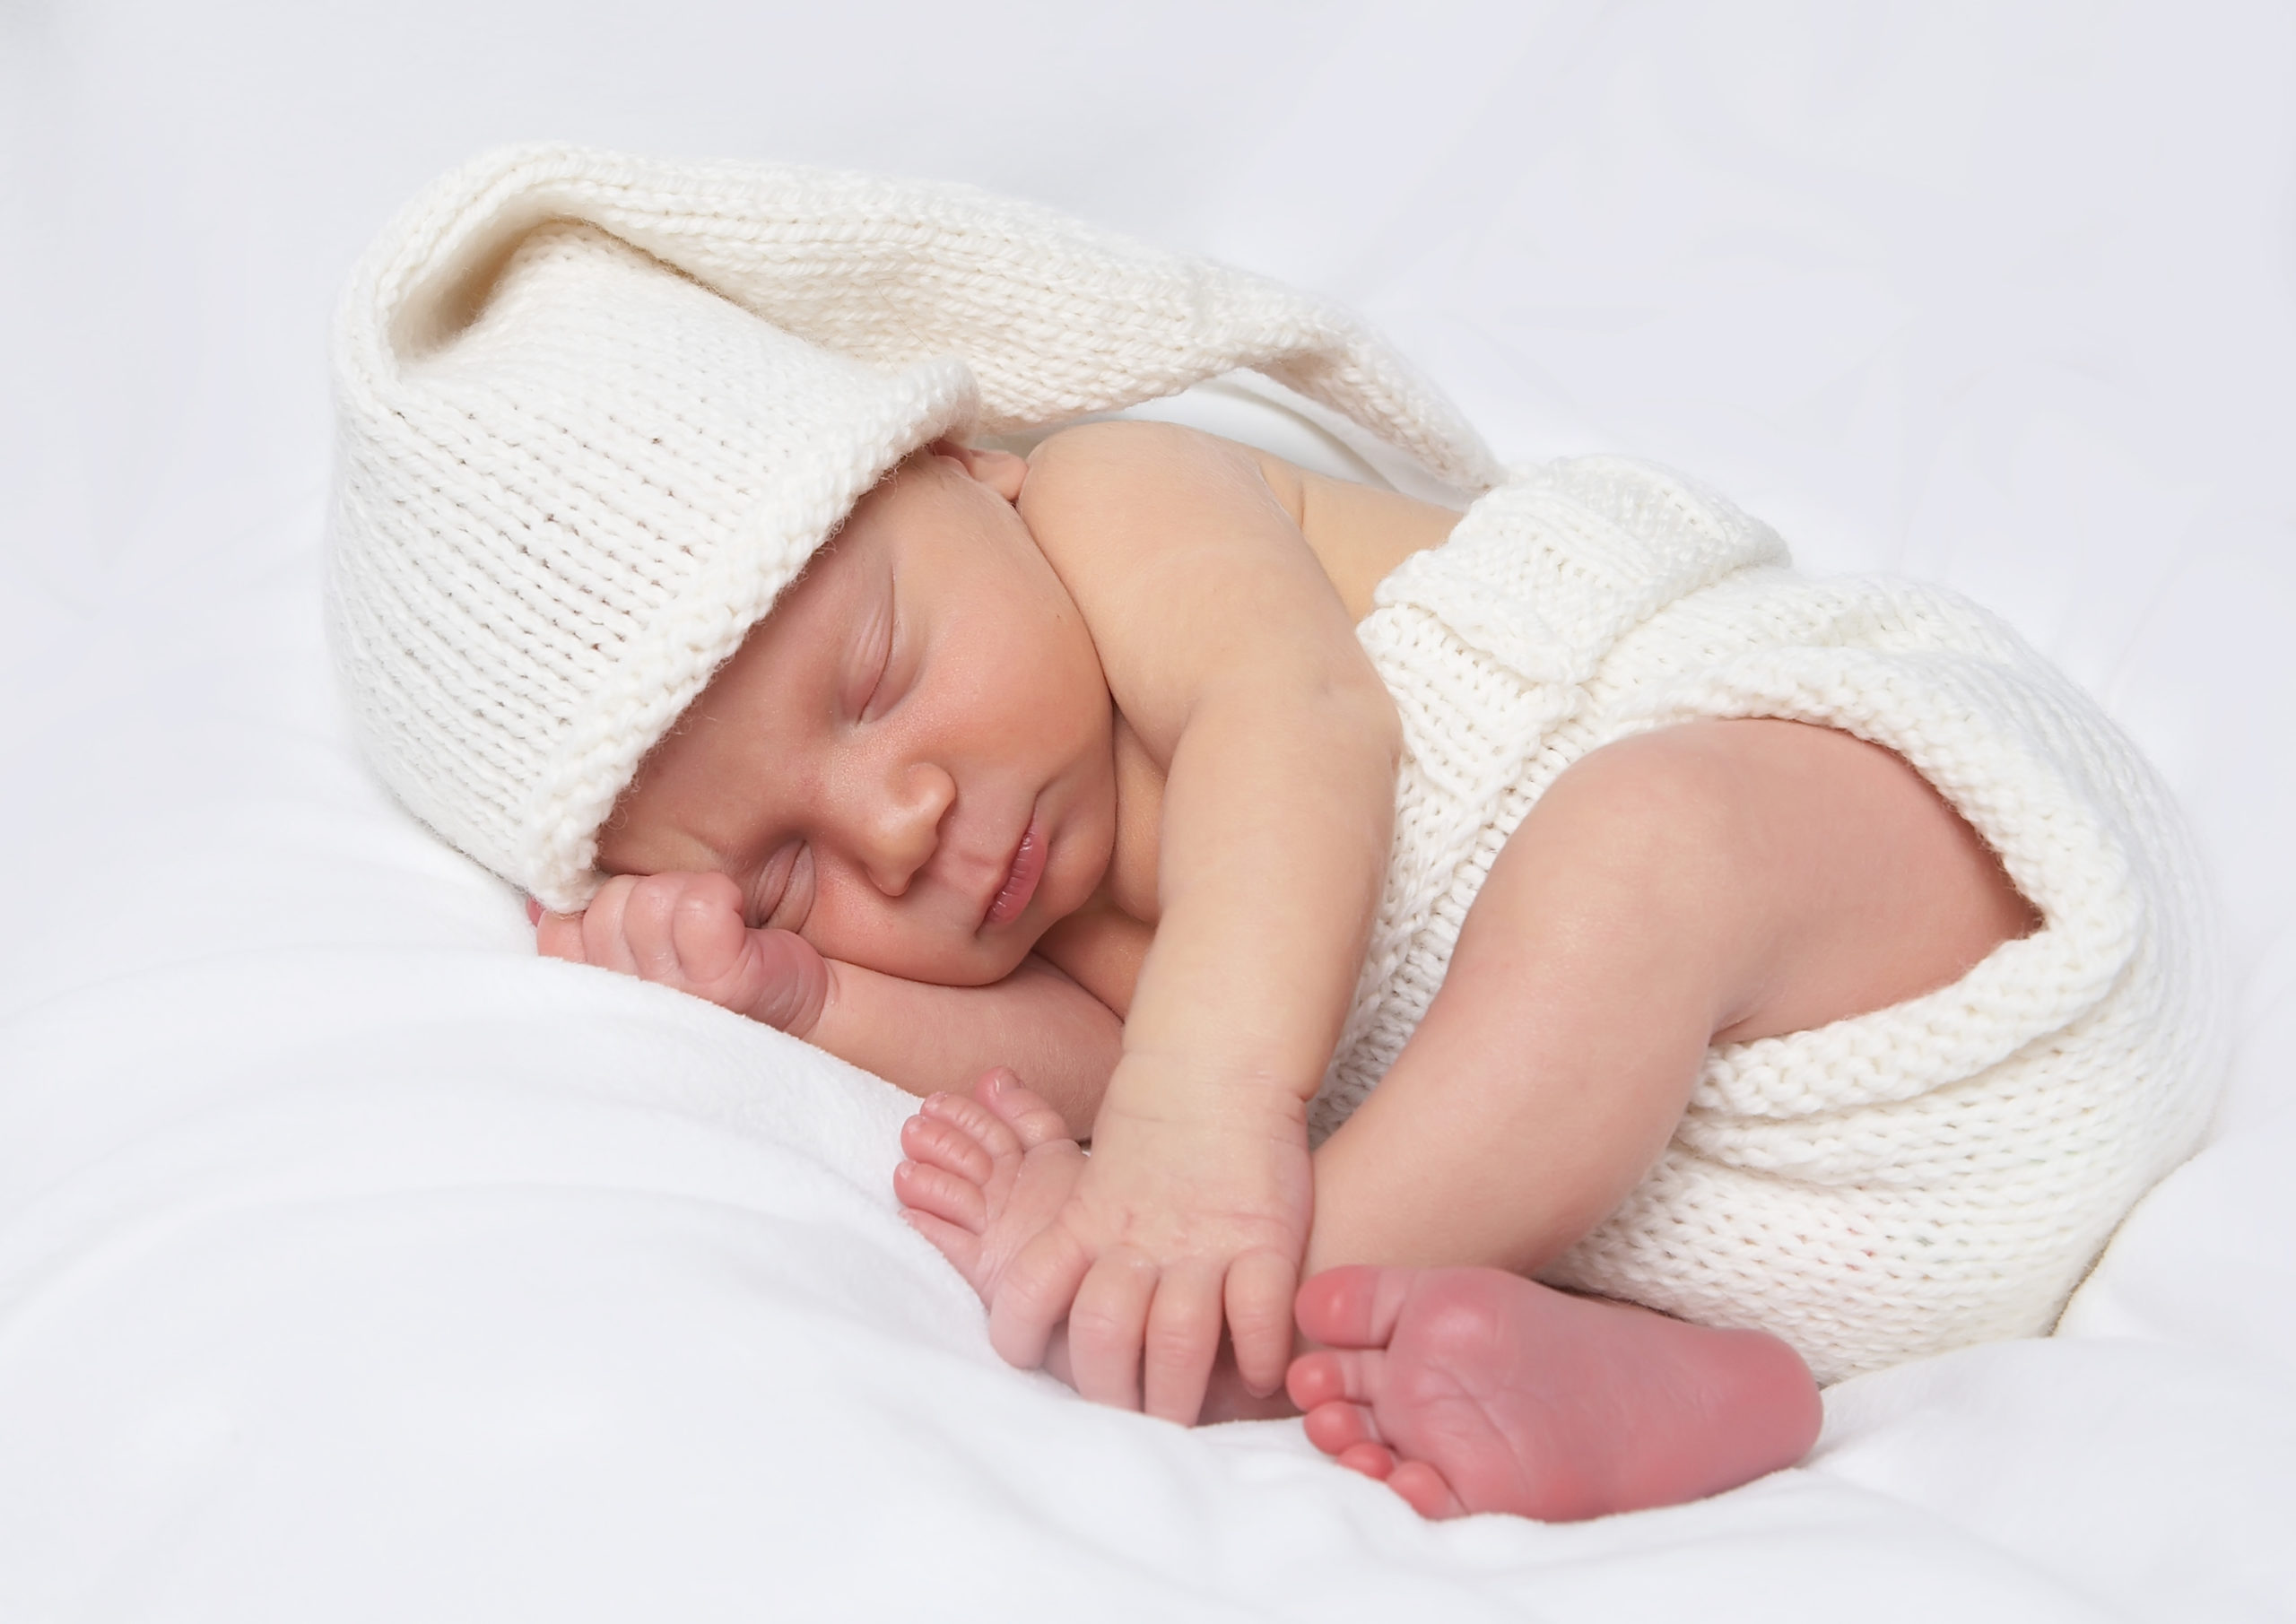 Se afecta el crecimiento en bebes nacidos por terapias de fertilidad